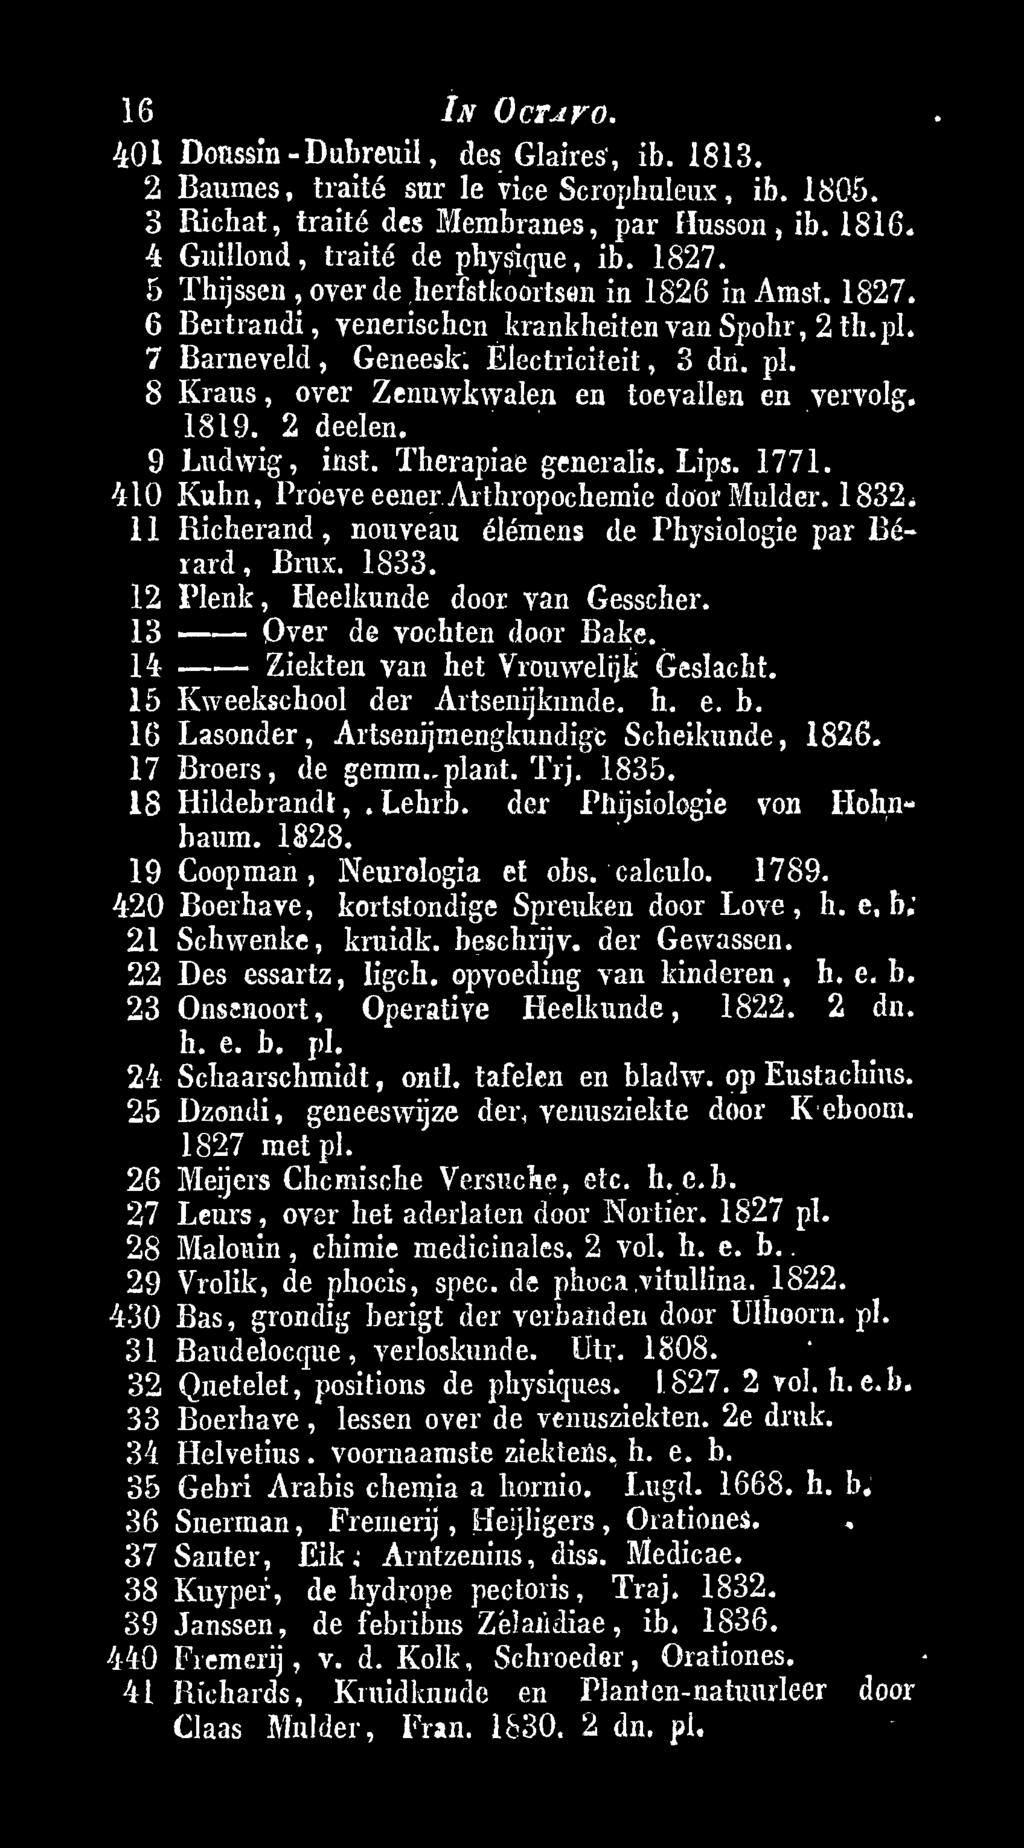 15 Kweekschool der Artsenijkunde. h. e. b. 16 Lasonder, Artsenijmengknndigc Scheikunde, 1826. 17 Broers, de gemm. plant. Trj. 1835. 18 Hildebrandt,, Lehrb. der Phijsiologie von Hohnbaum. 1828.